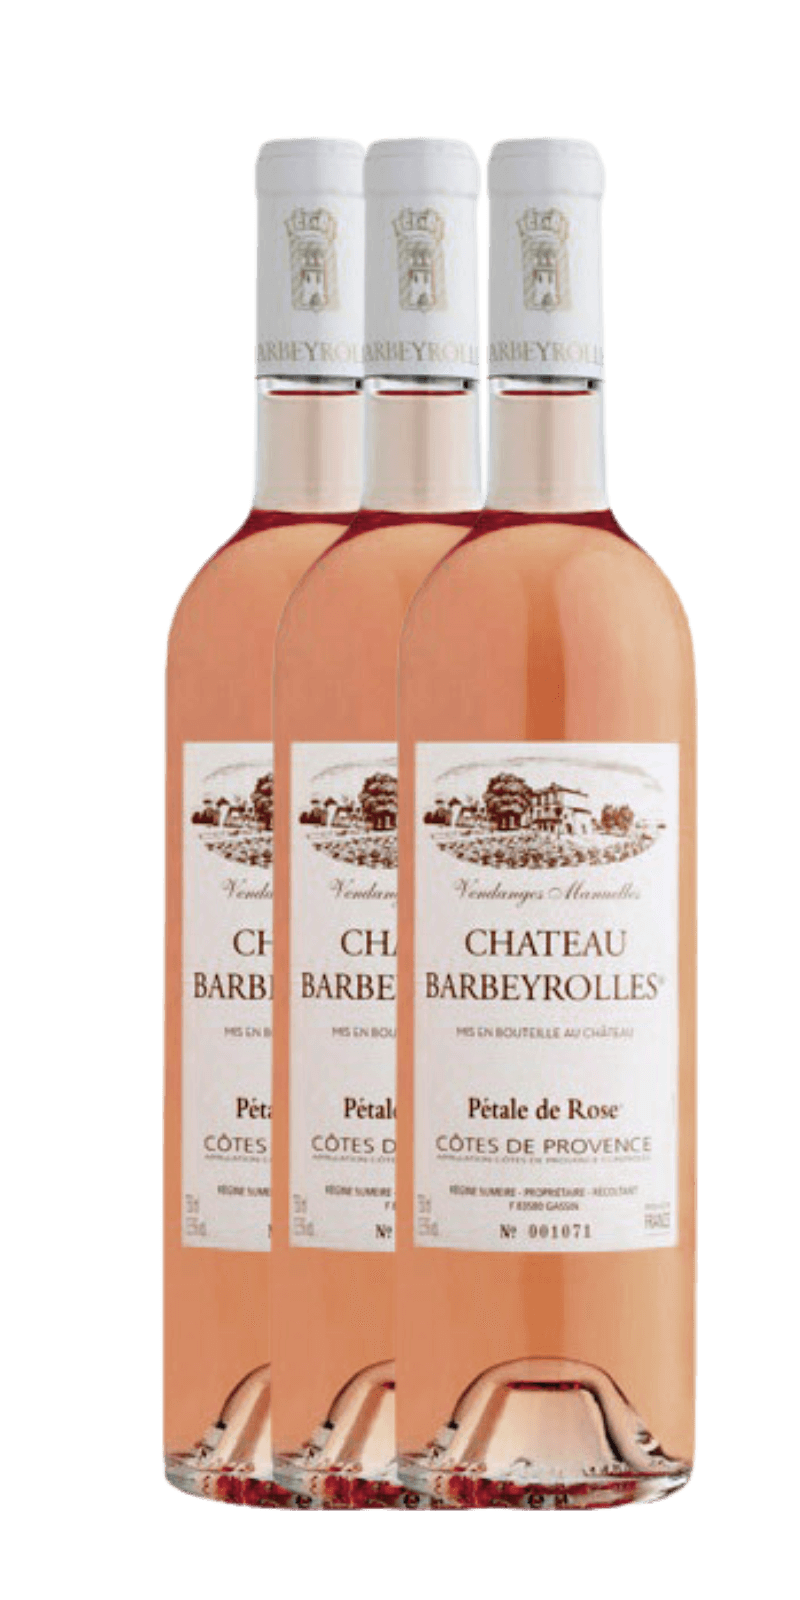 chateau-barbeyrolles-verticale-di-petale-de-rose-cotes-de-provence-2019-2020-2021